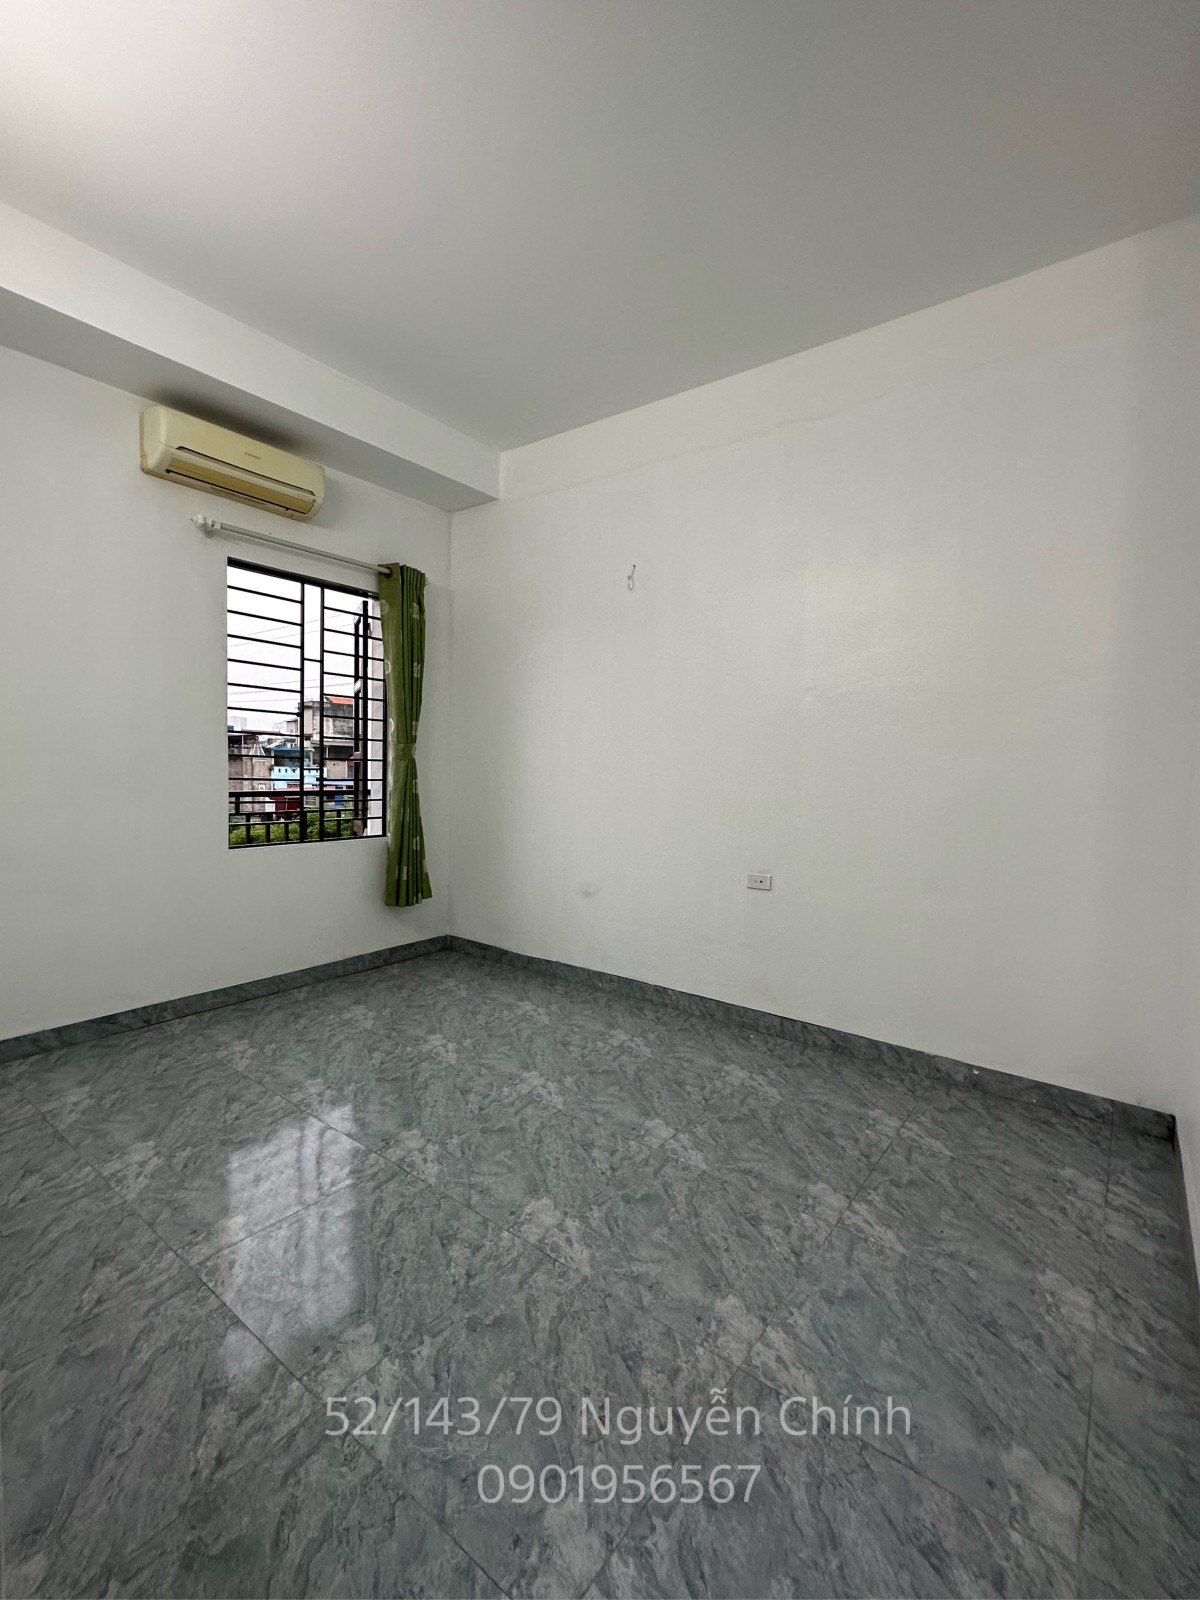 Cho thuê phòng 20m2 mới xây khép kín ban công, cửa sổ, máy nóng lạnh, điều hoà tại Hoàng Mai, HN